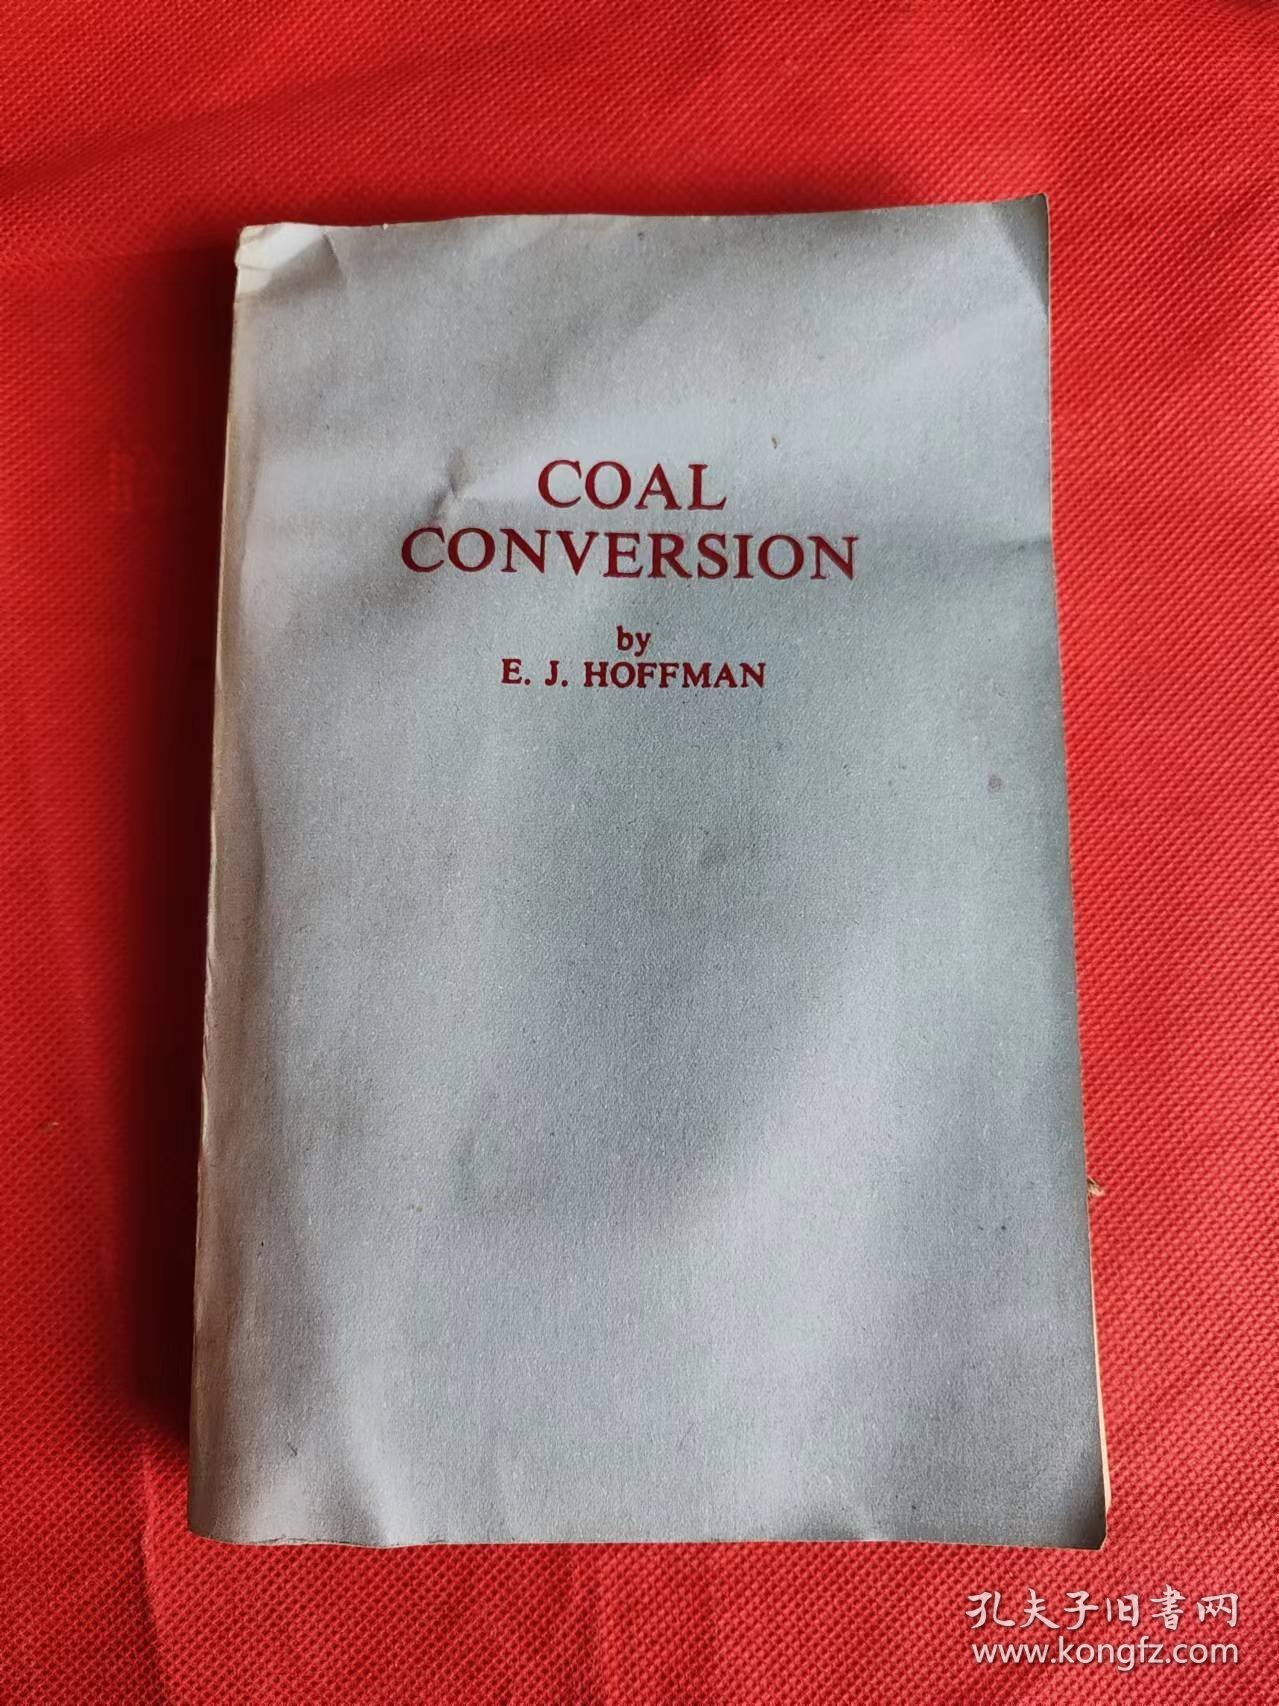 煤的转化 英文版